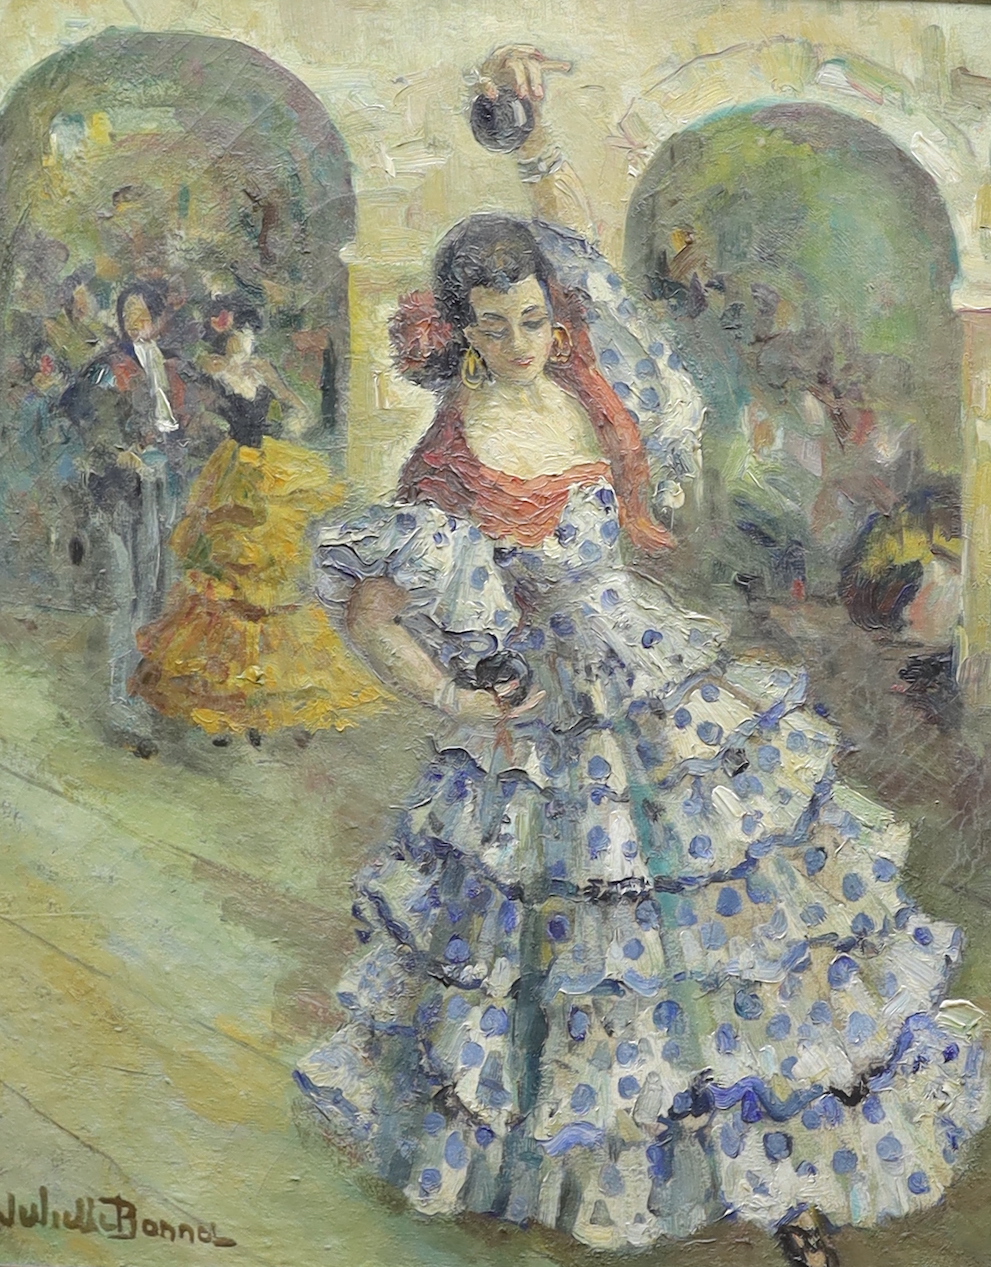 Juliette Bonnet (20th. C), oil on canvas, Flamenco dancers, signed, 63 x 52cm